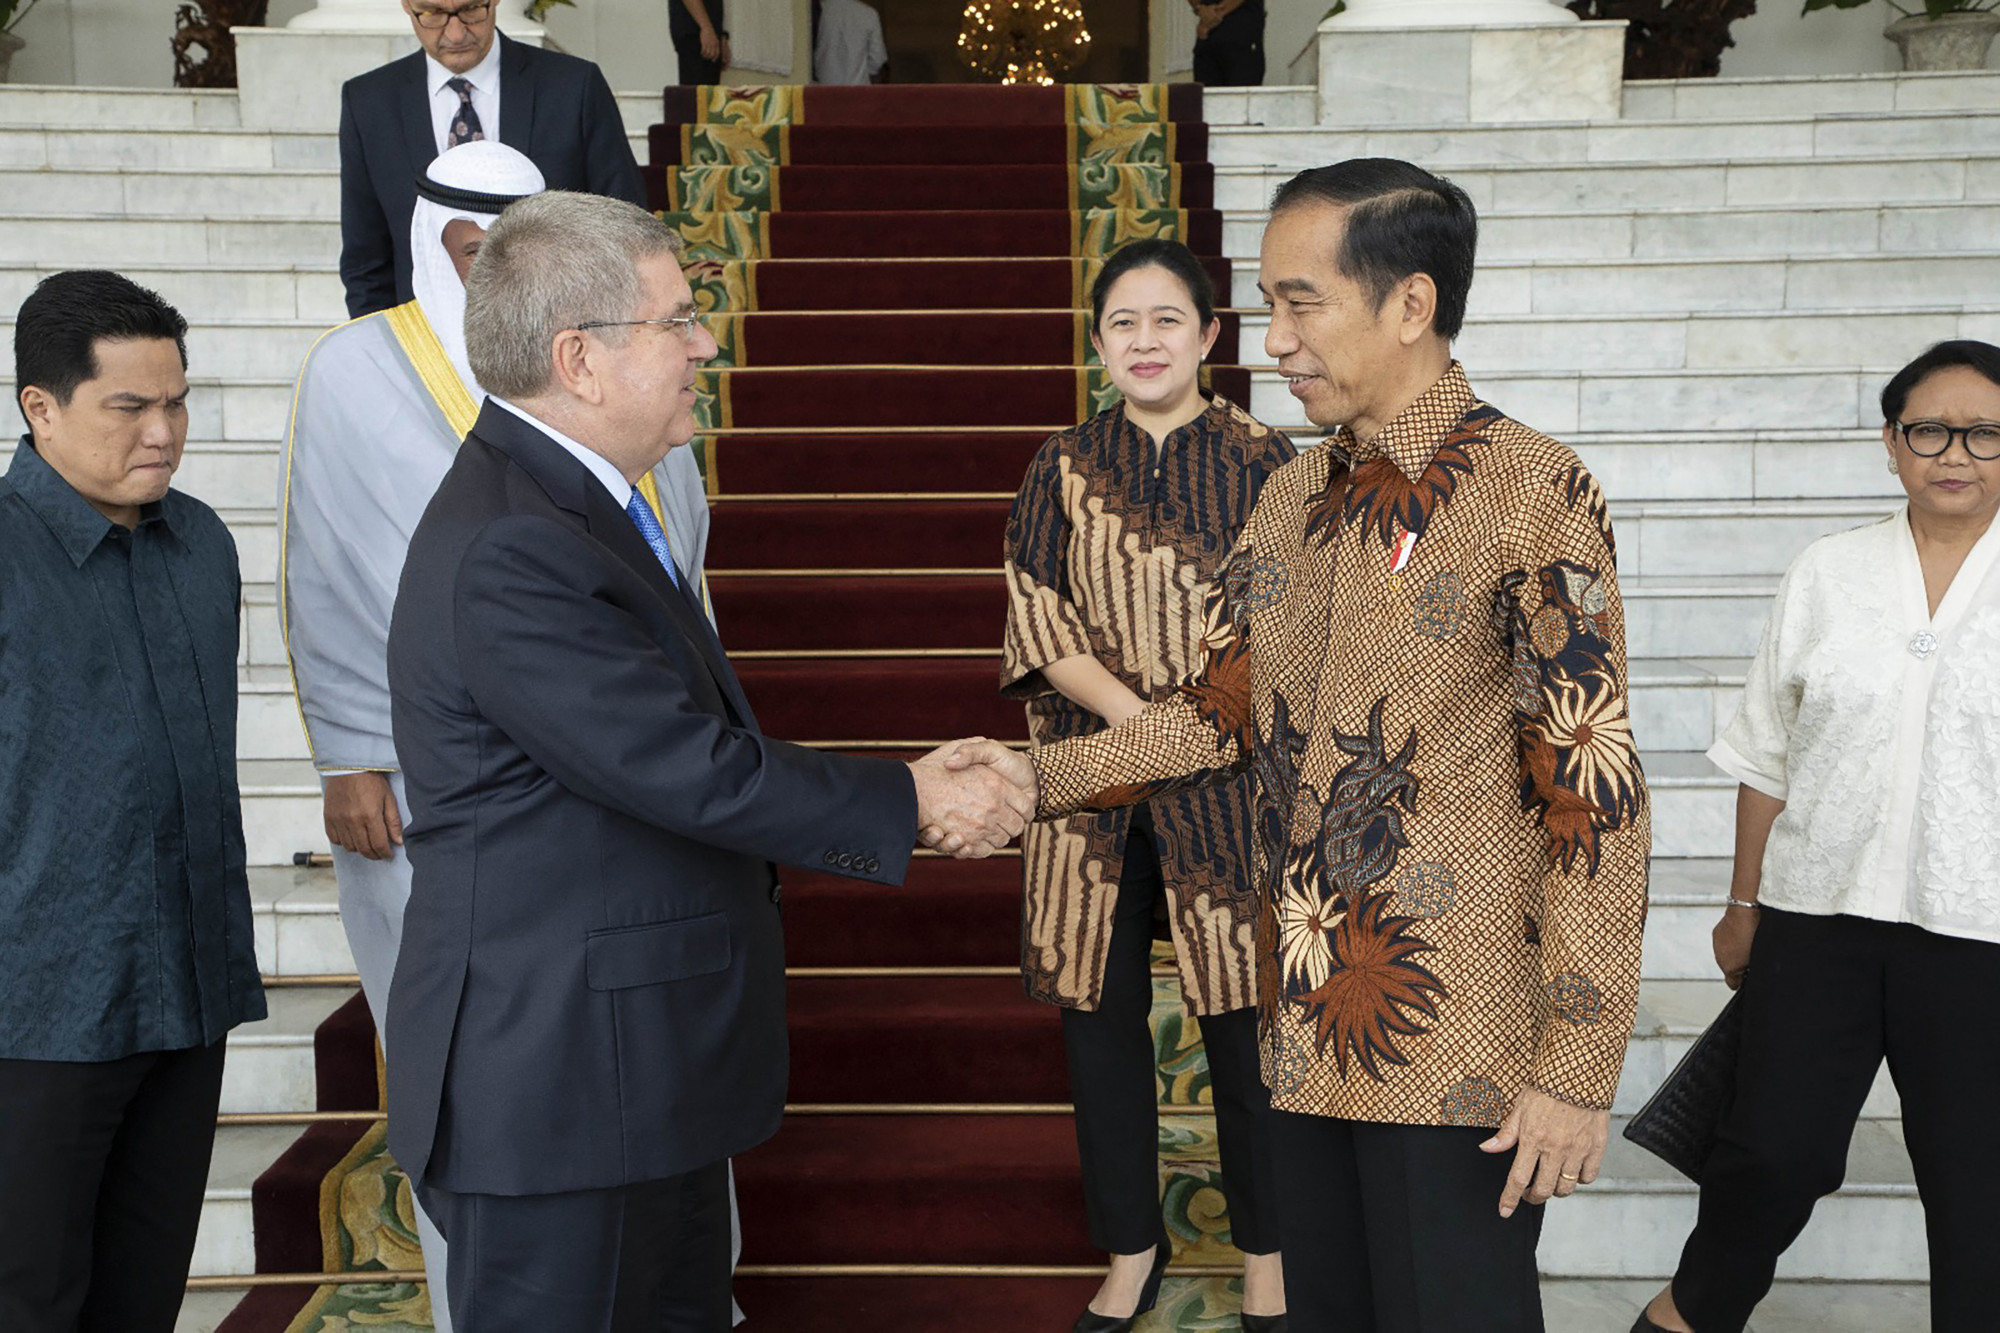 Thomas Bach, a Nemzetközi Olimpiai Bizottság elnöke és Joko Widodo, indonéz elnök 2018-ban, miután Indonézia bejelentette, hogy megpályázza a 2032-es olimpia megrendezését